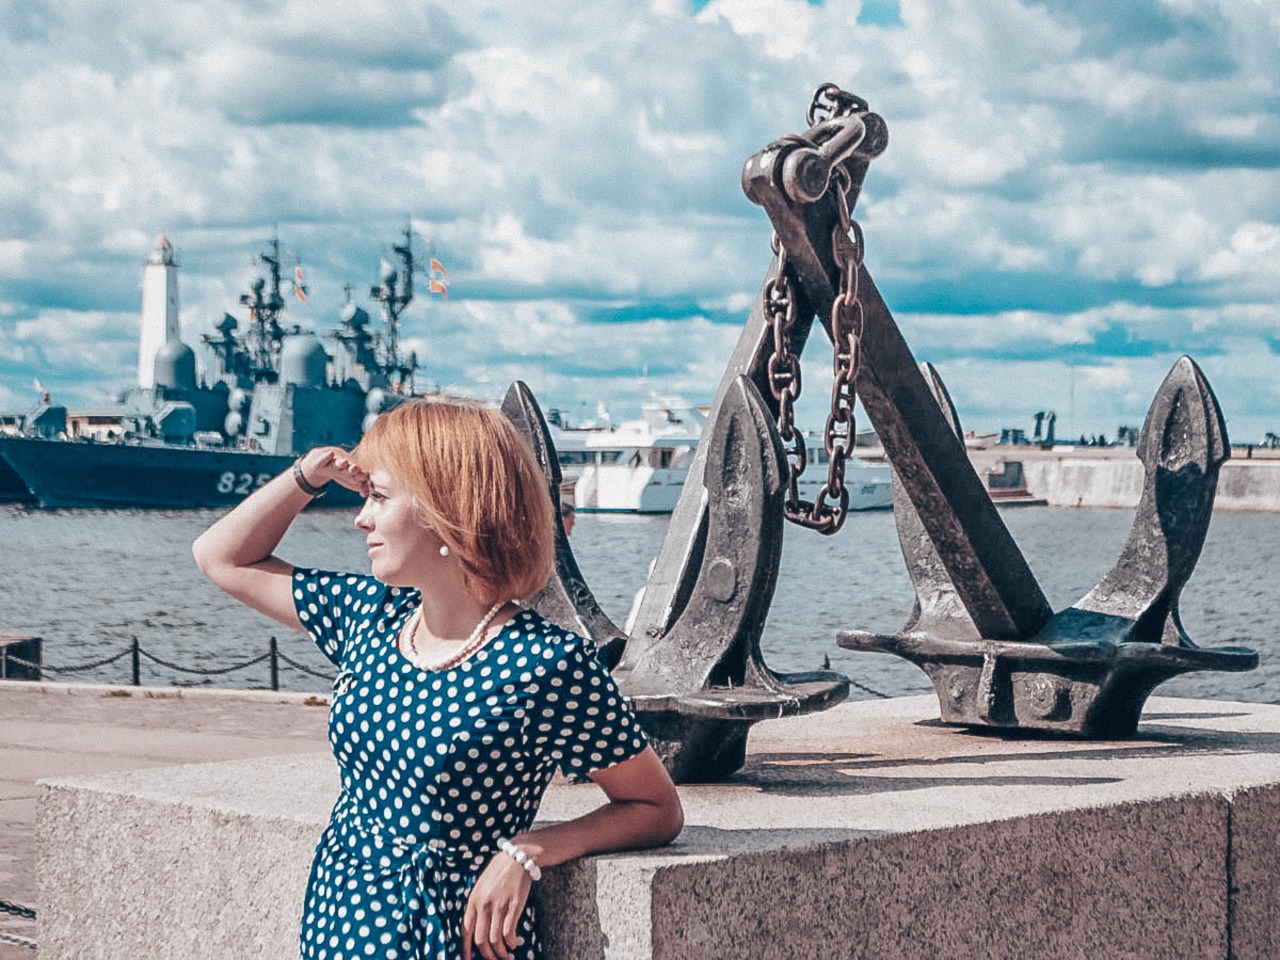 Хранитель традиций российского флота — Кронштадт  | Цена 5220₽, отзывы, описание экскурсии